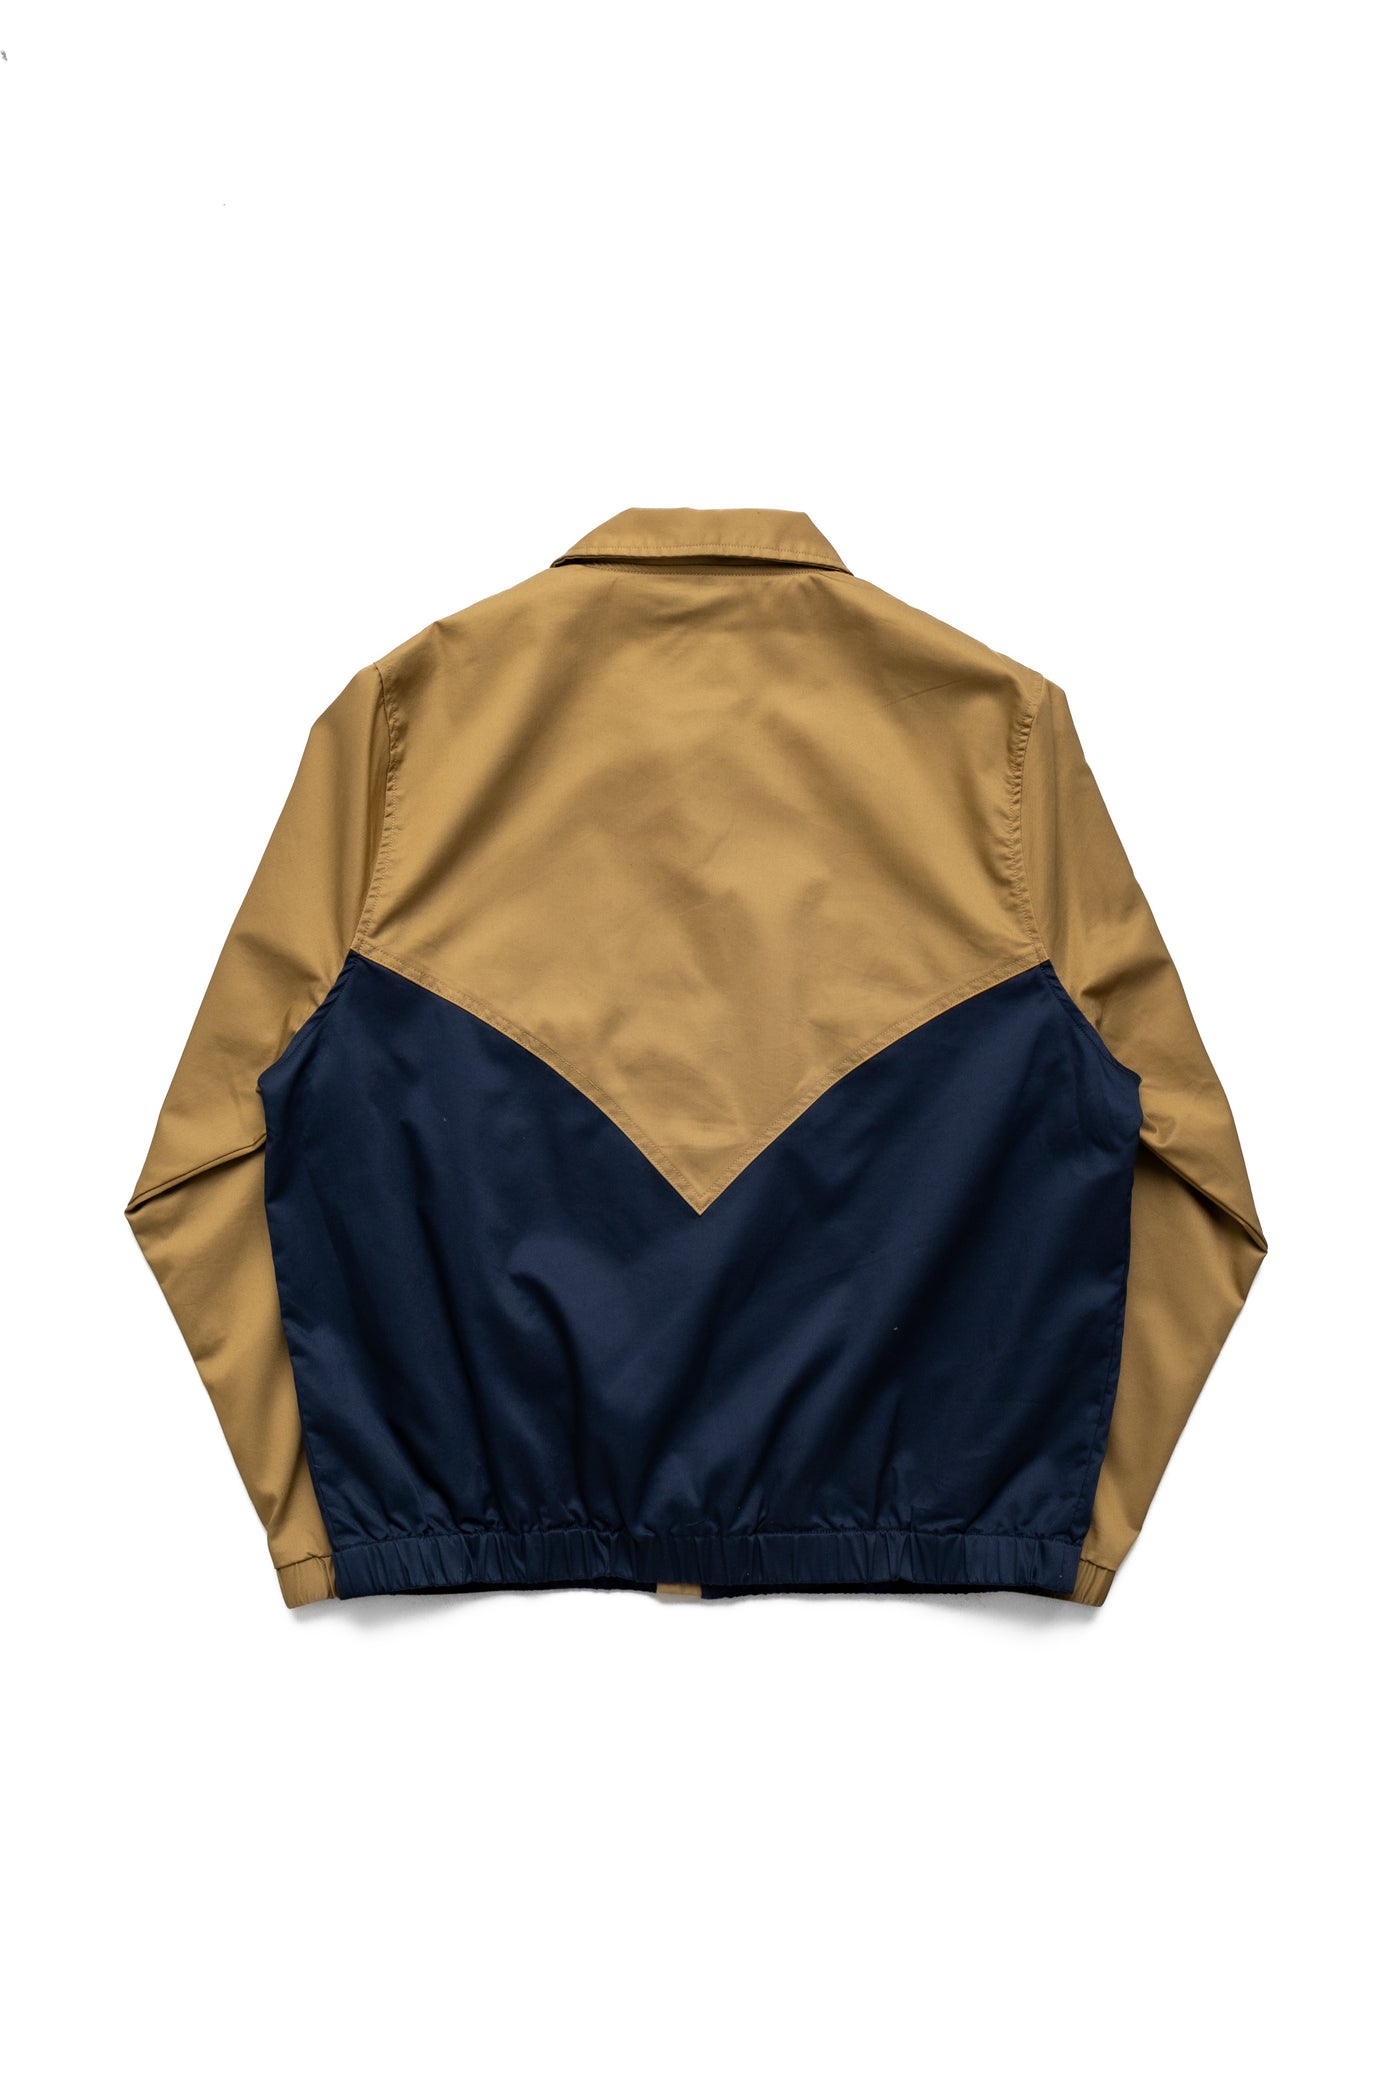 Western Jacket - Khaki/Navy